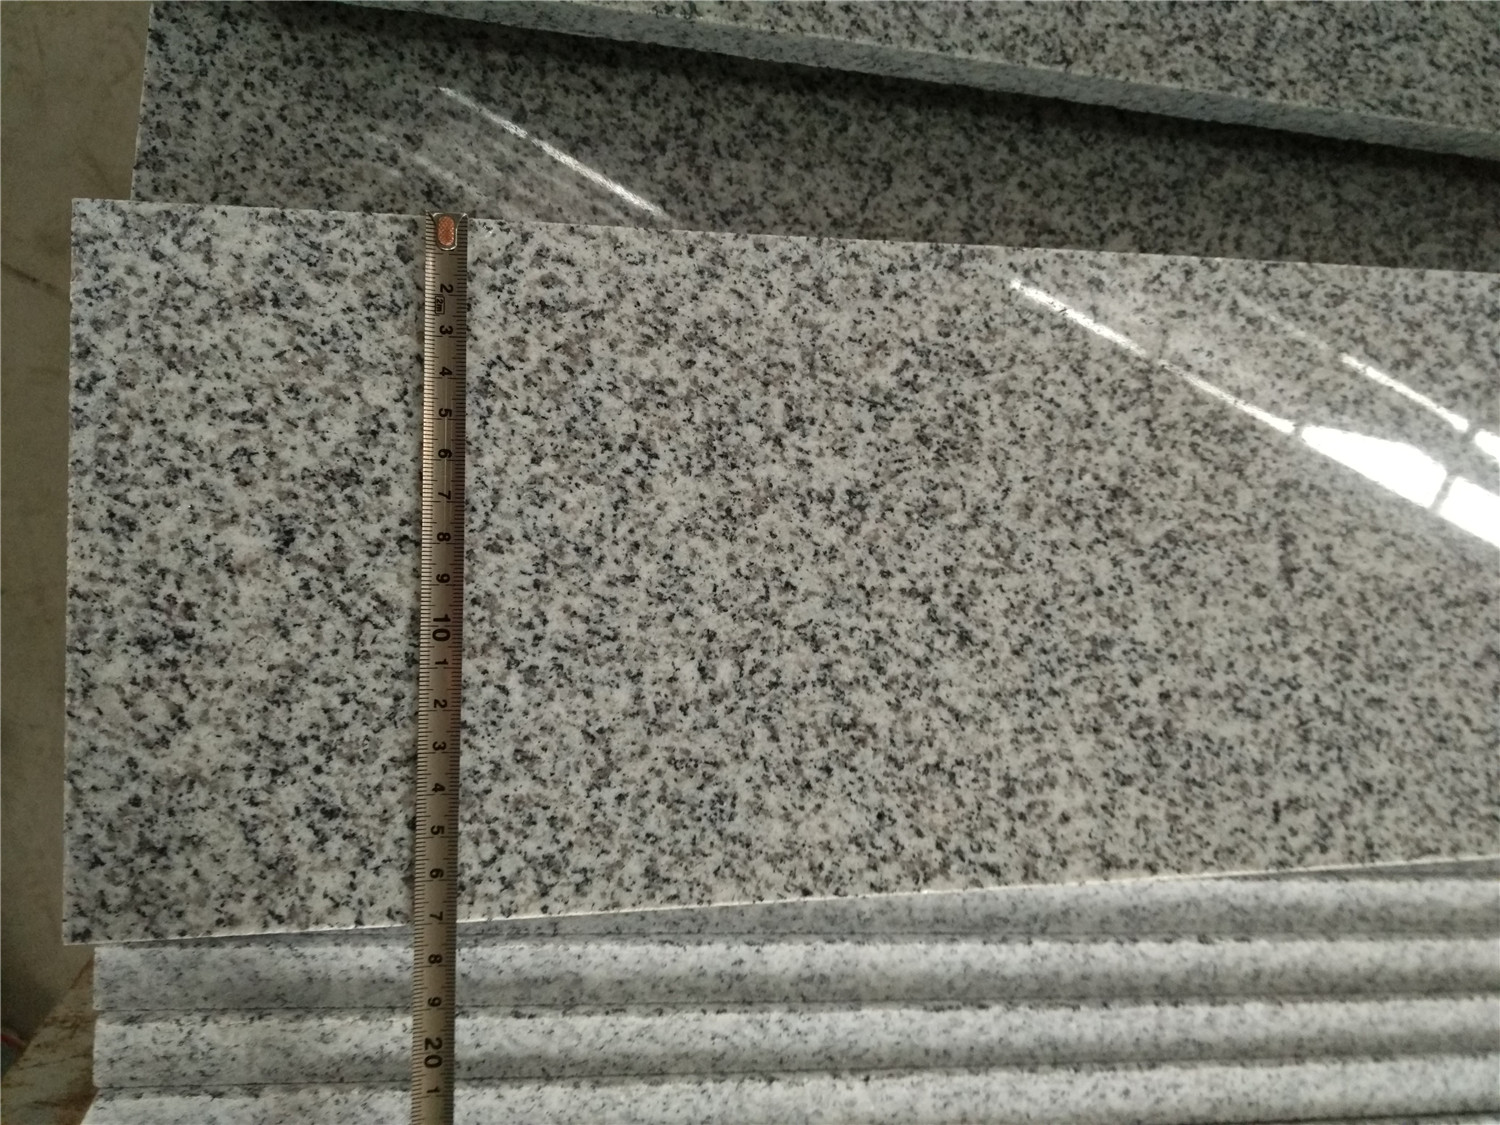 Polierte Treppe und Setzstufen aus Granit G603